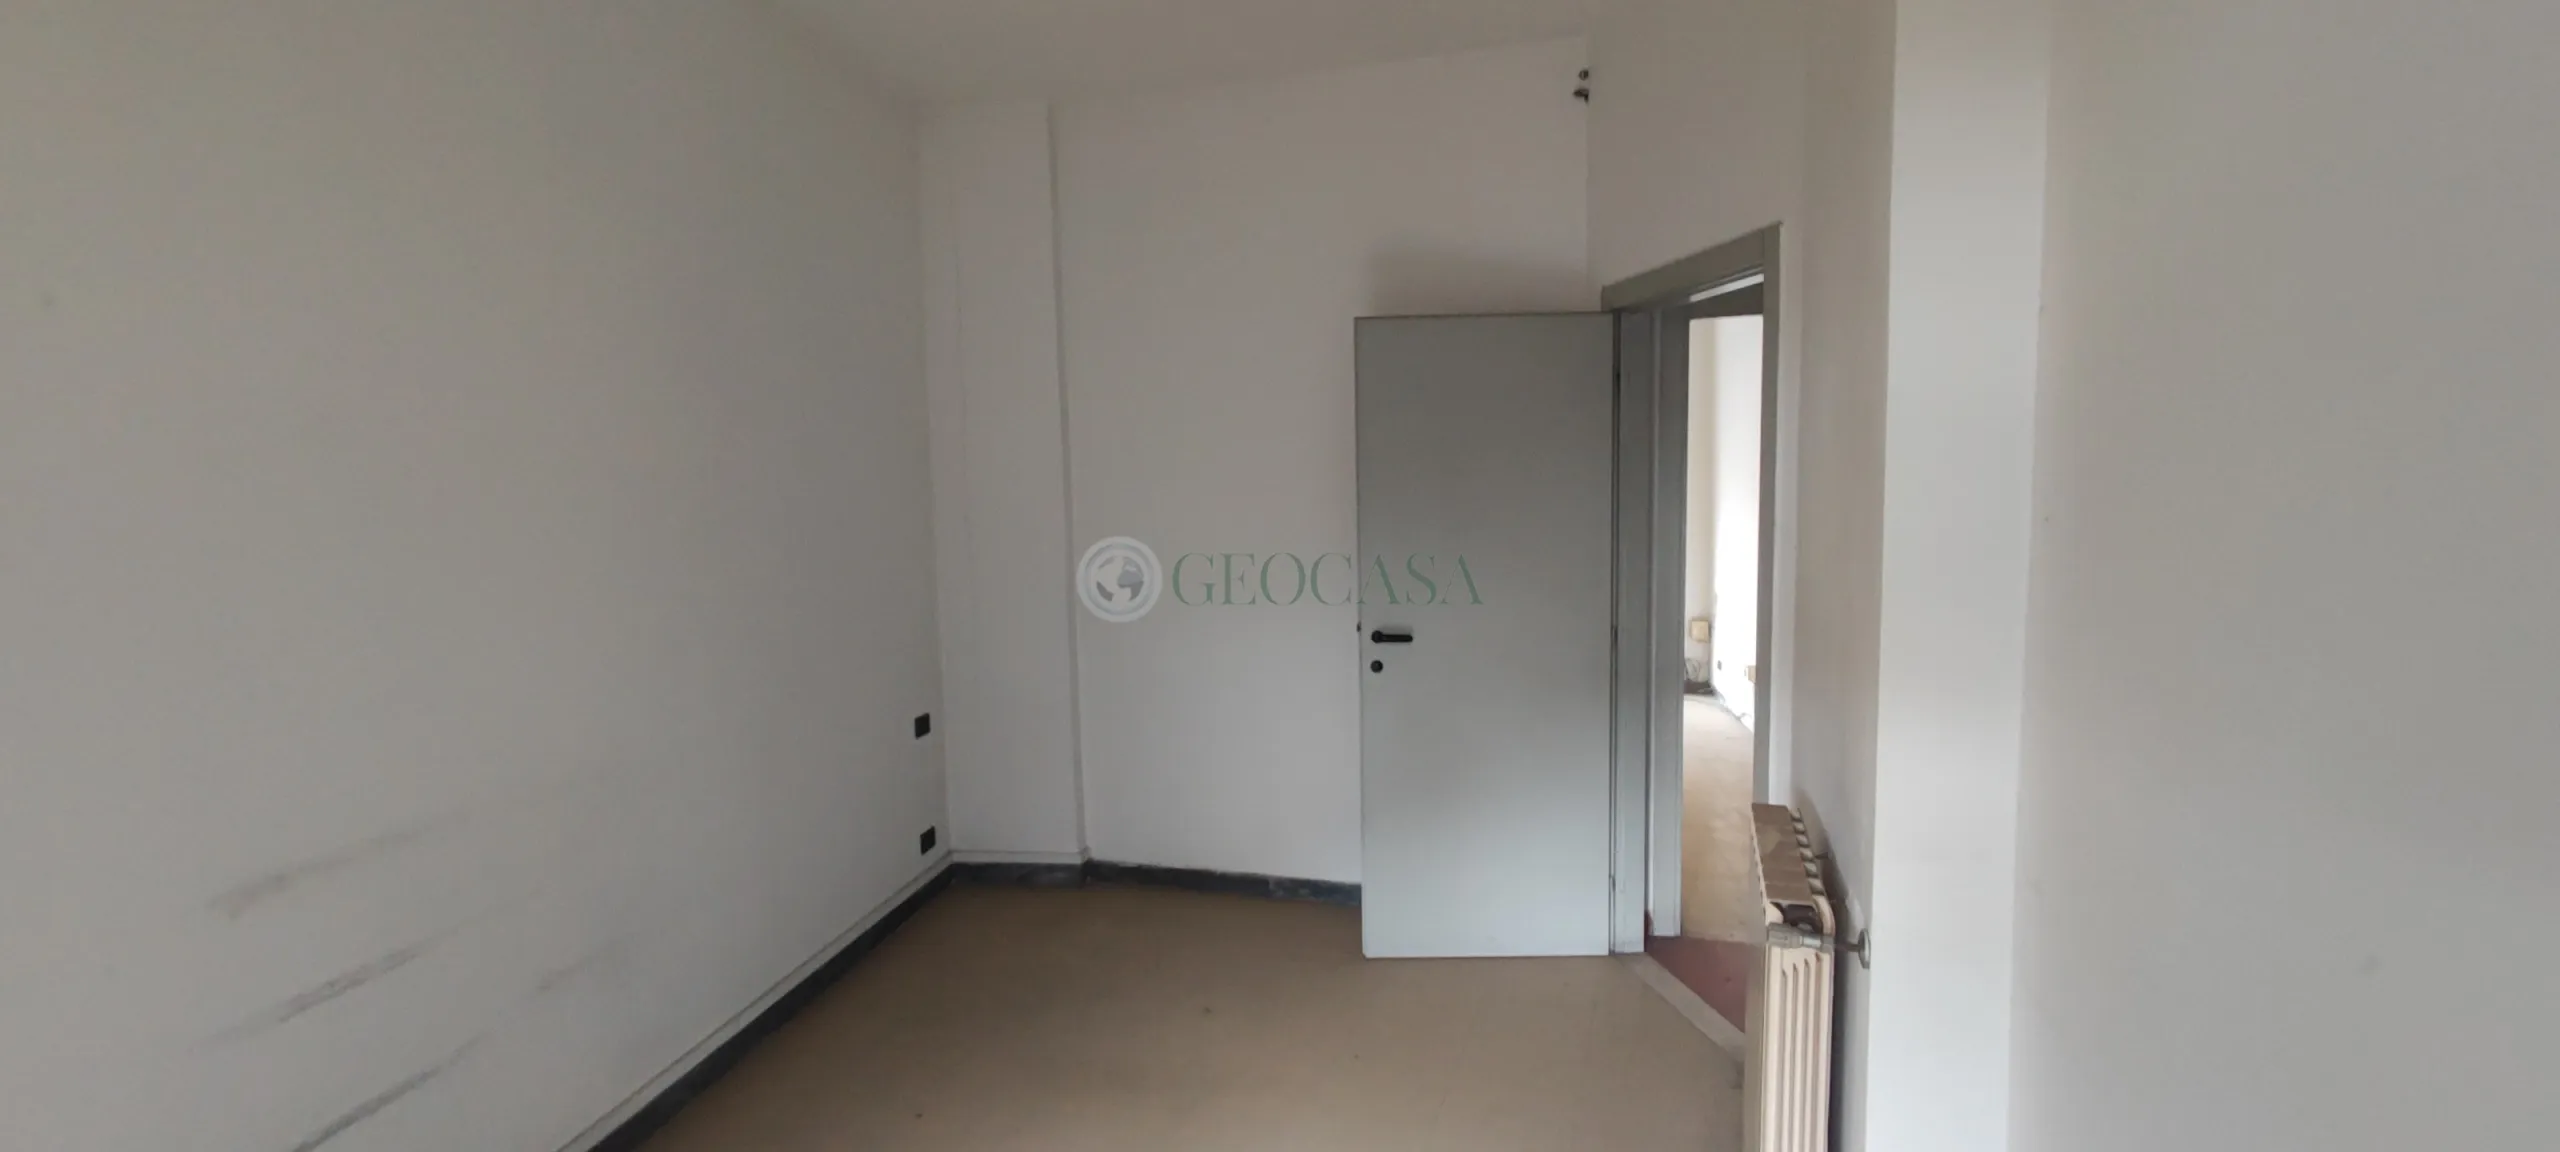 Immagine per Appartamento in vendita a Sarzana via Bertoloni 43